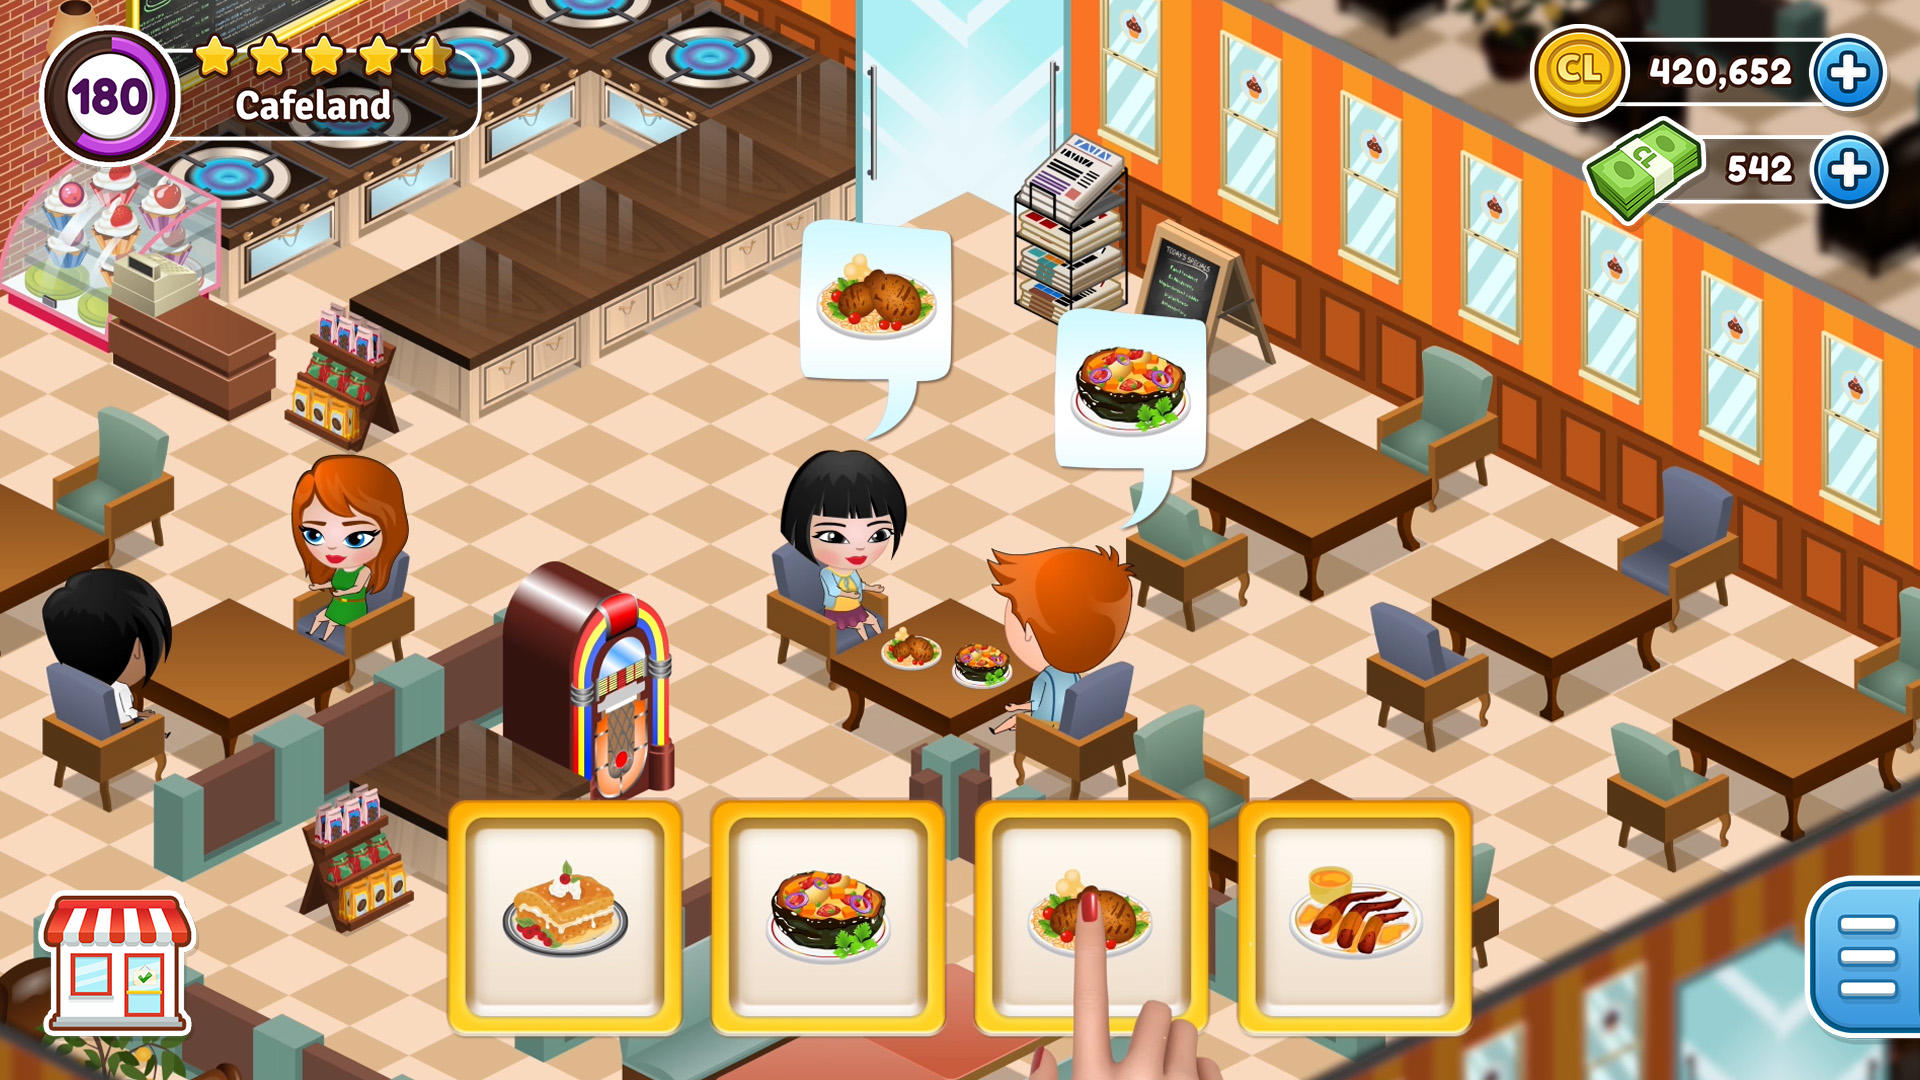 Screenshot 1 of Cafeland - 餐厅游戏 2.22.5